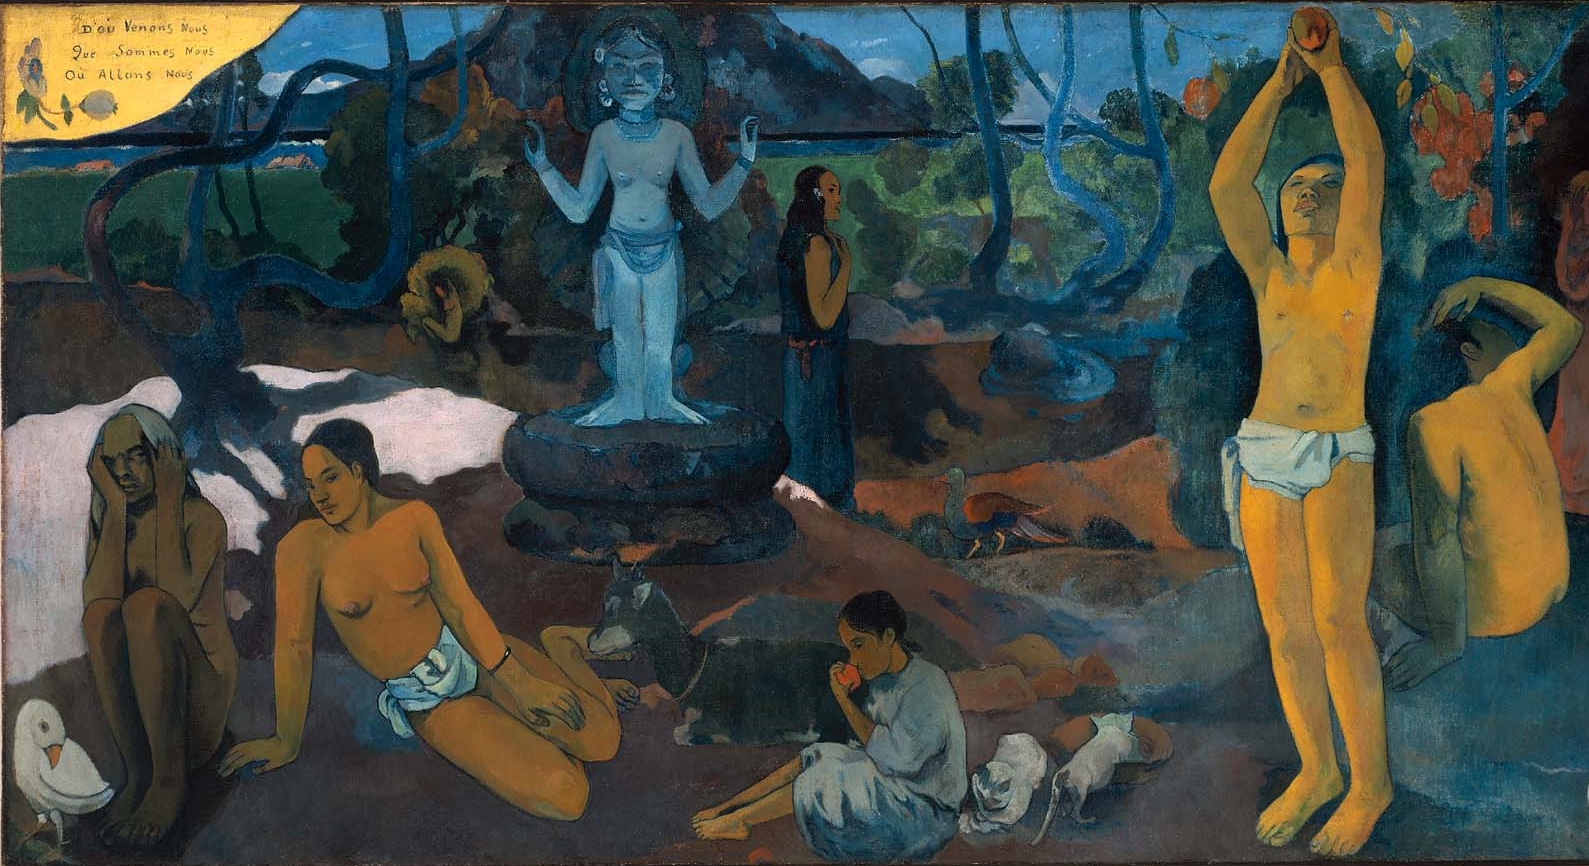 Paul+Gauguin-1848-1903 (415).jpg